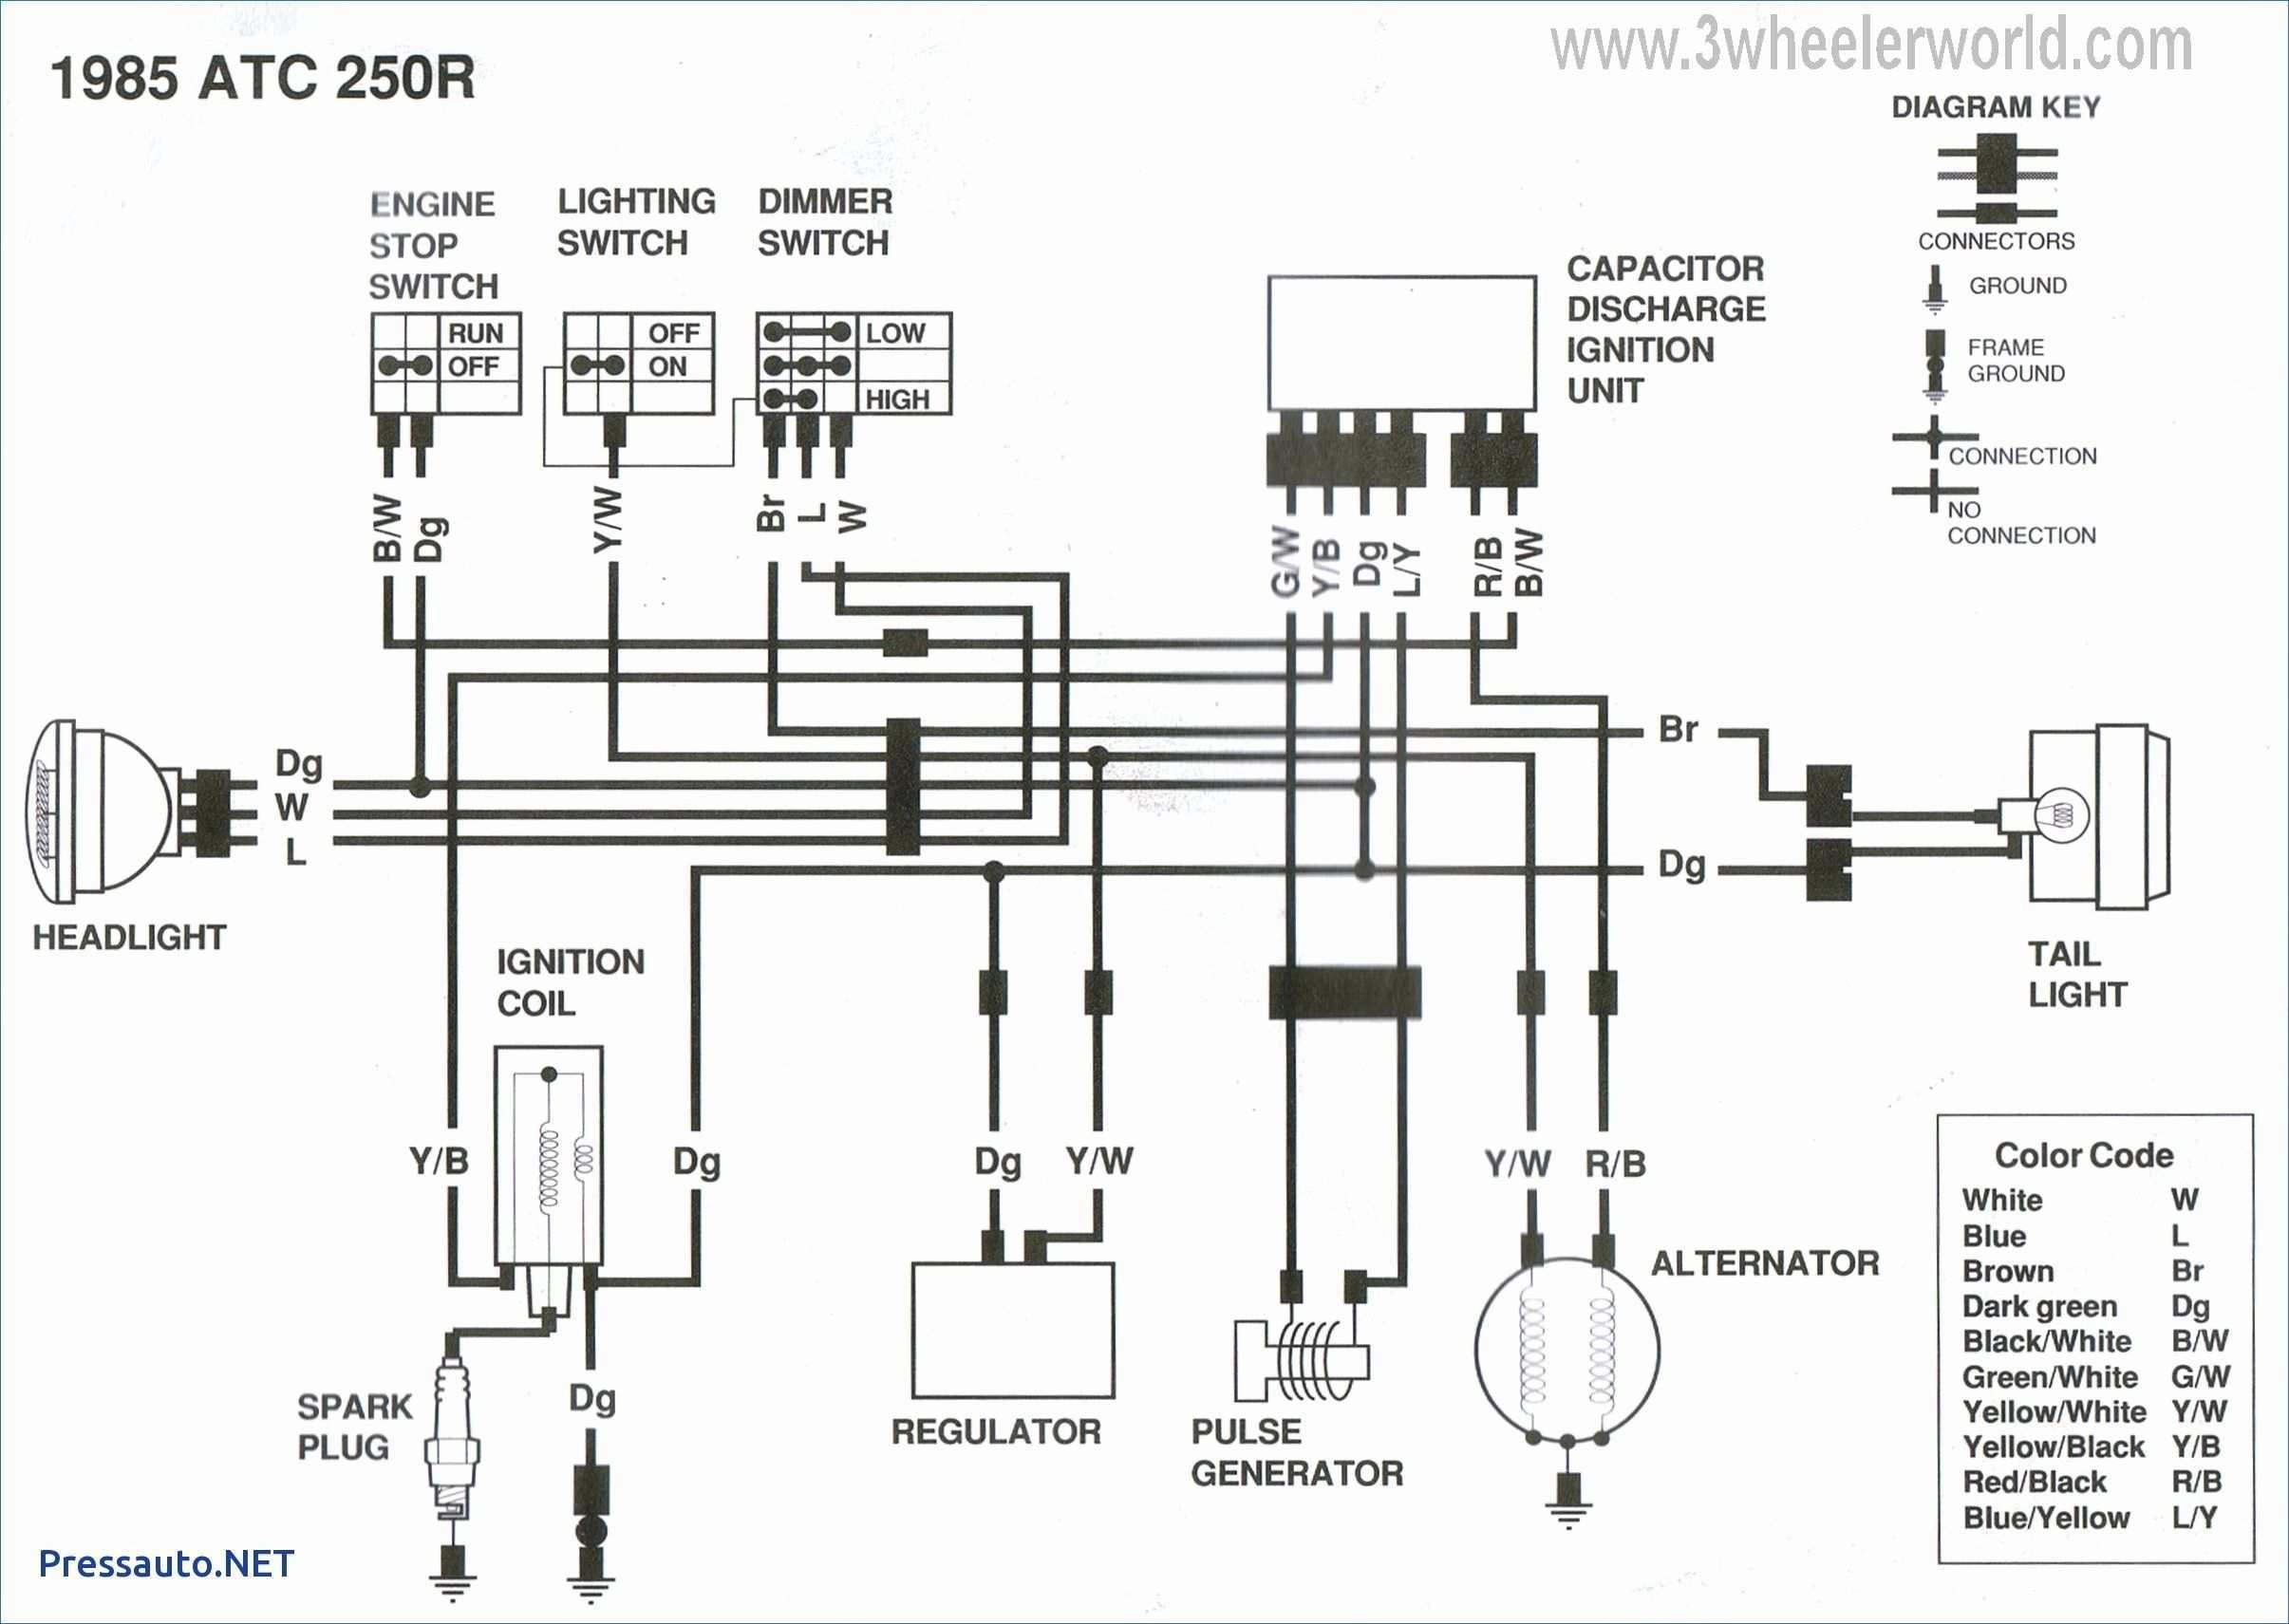 Porsche 993 Engine Diagram Porsche Wiring Diagram Wiring Diagram New Of Porsche 993 Engine Diagram